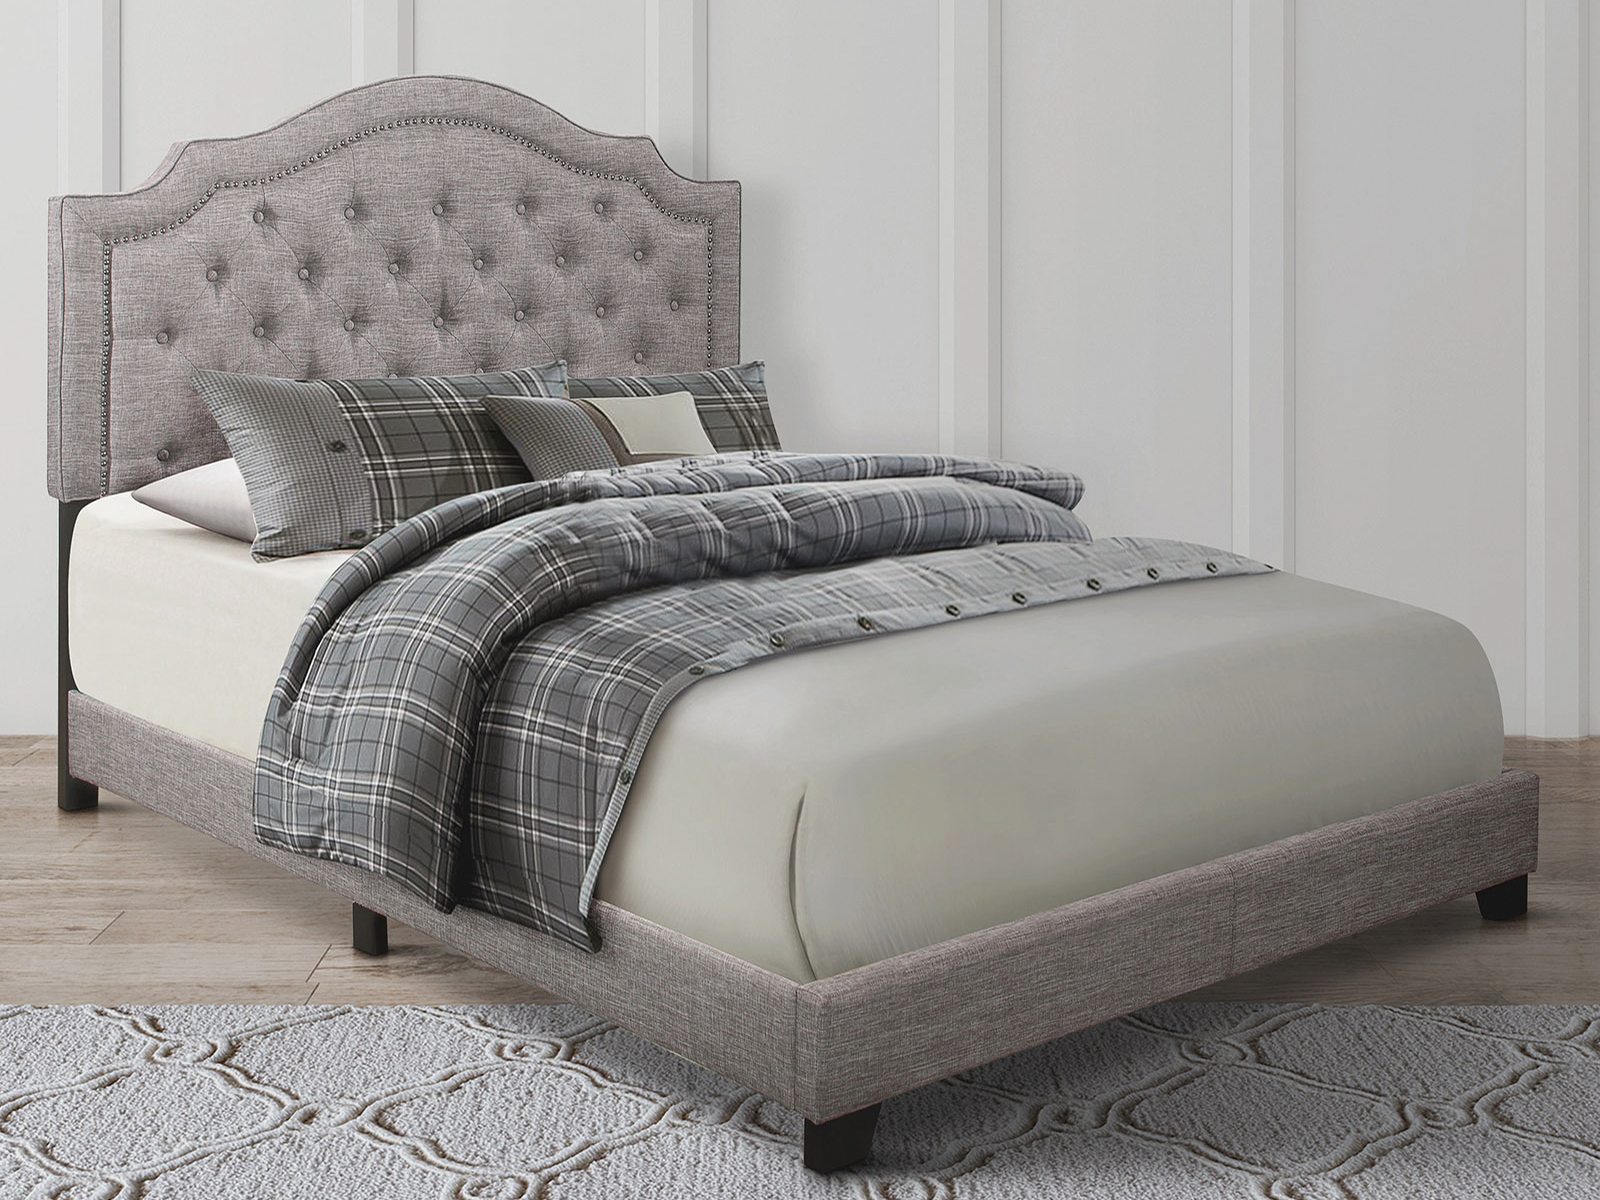 Homelegance Upholstered Bed Set | King | Harley Bed Frame & Headboard | Gray